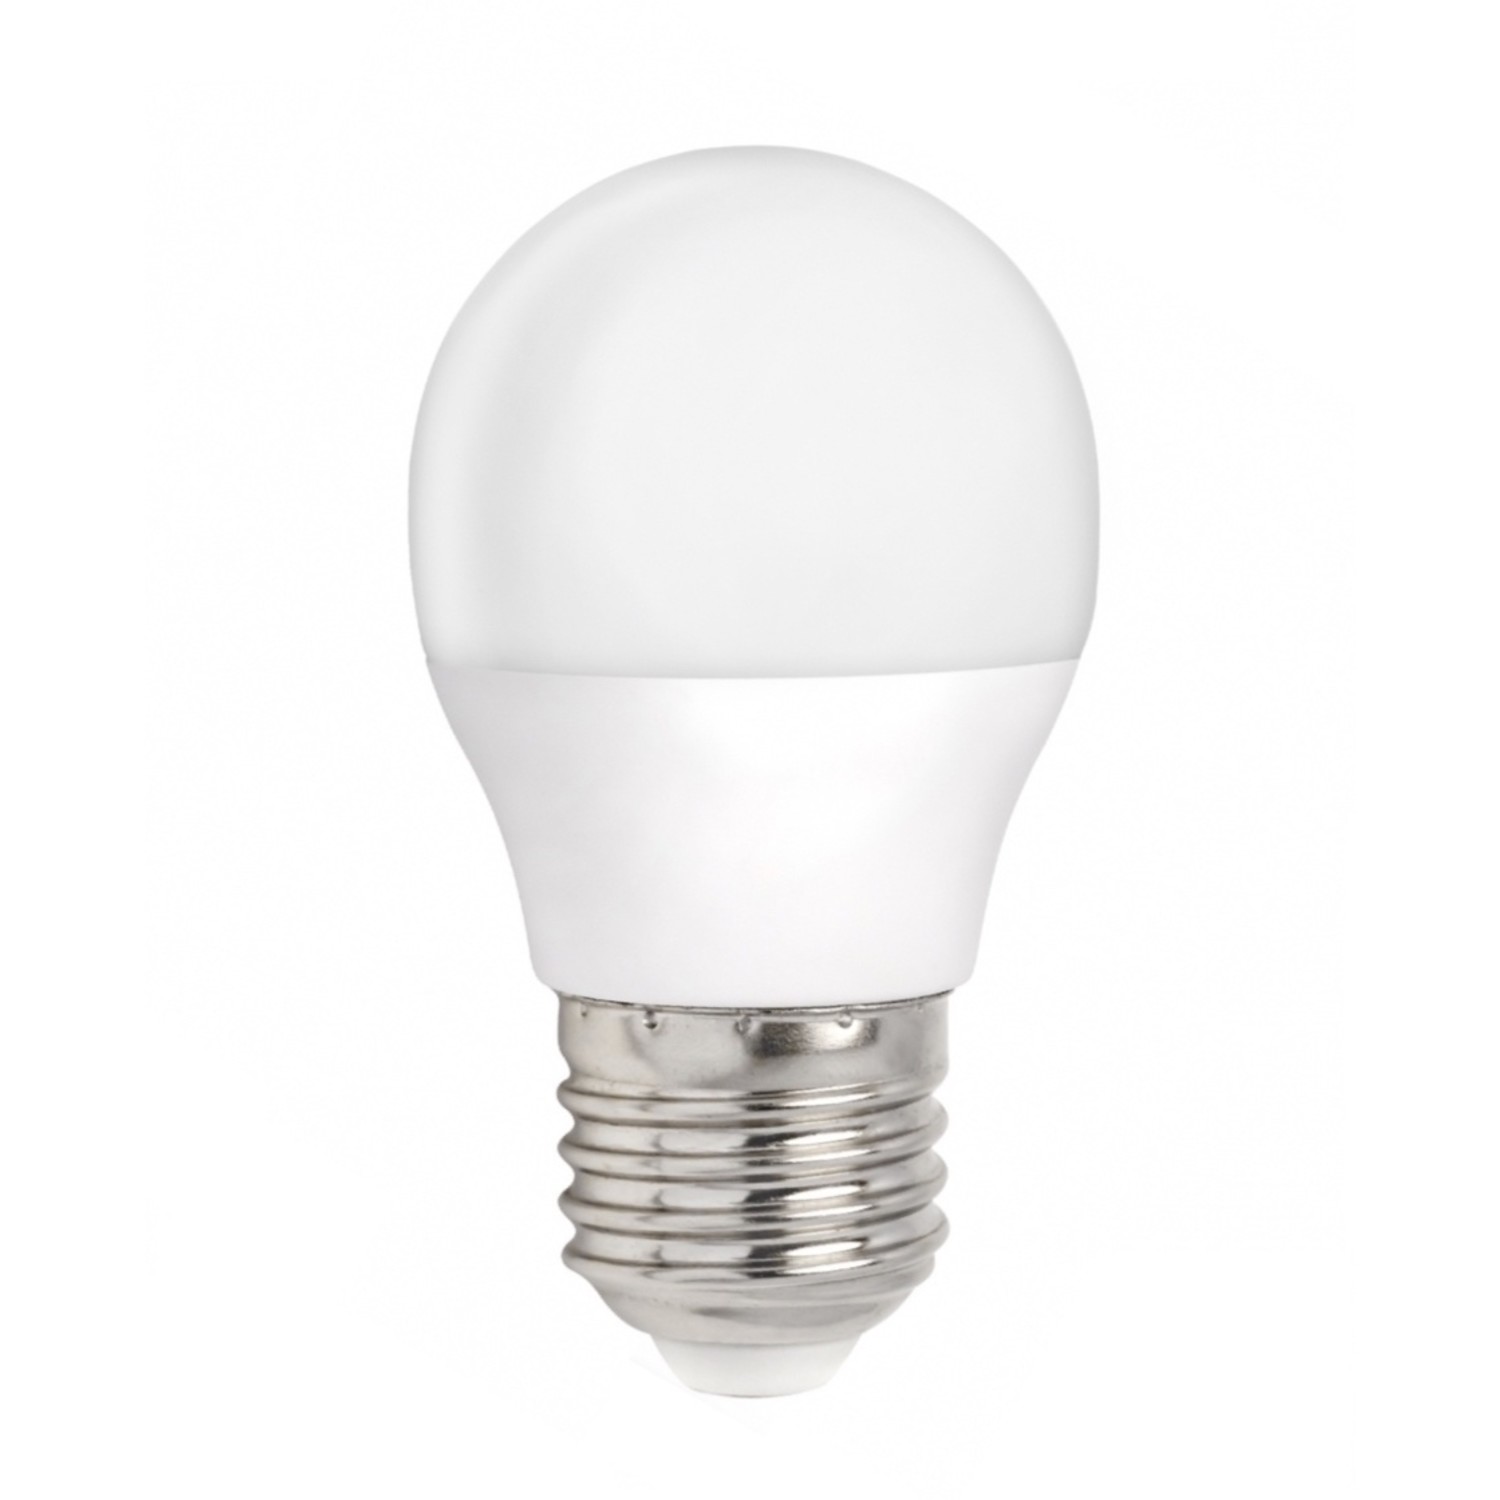 LED lamp - E27 fitting - 3W vervangt 25W - Warm licht 3000K - Ledlichtdiscounter.nl